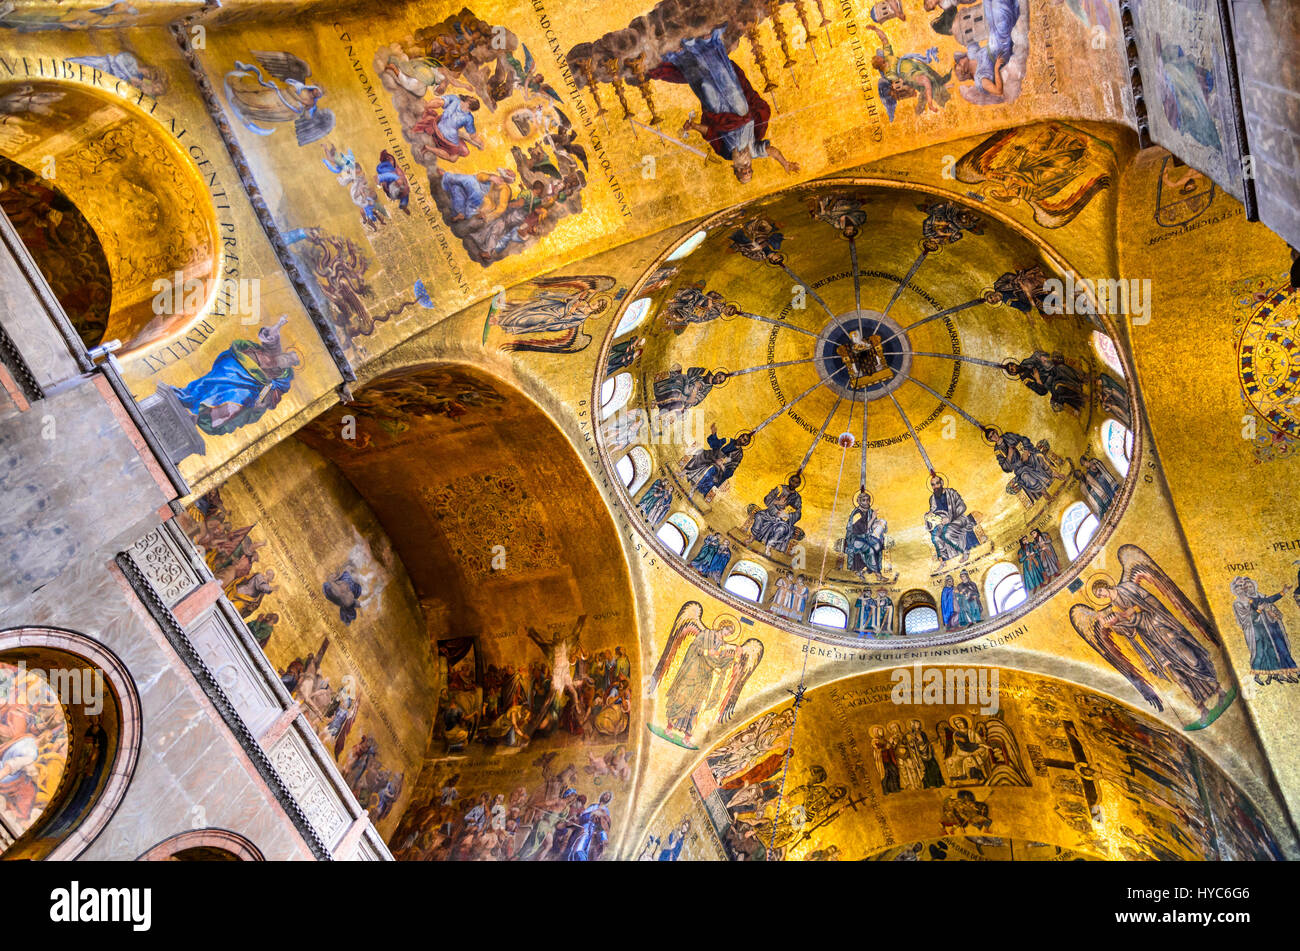 Venedig, Italien - Innenraum byzantinischen Stil bemalten Kuppel der Basilika San Marco, Venedig Sehenswürdigkeiten Italiens. Stockfoto